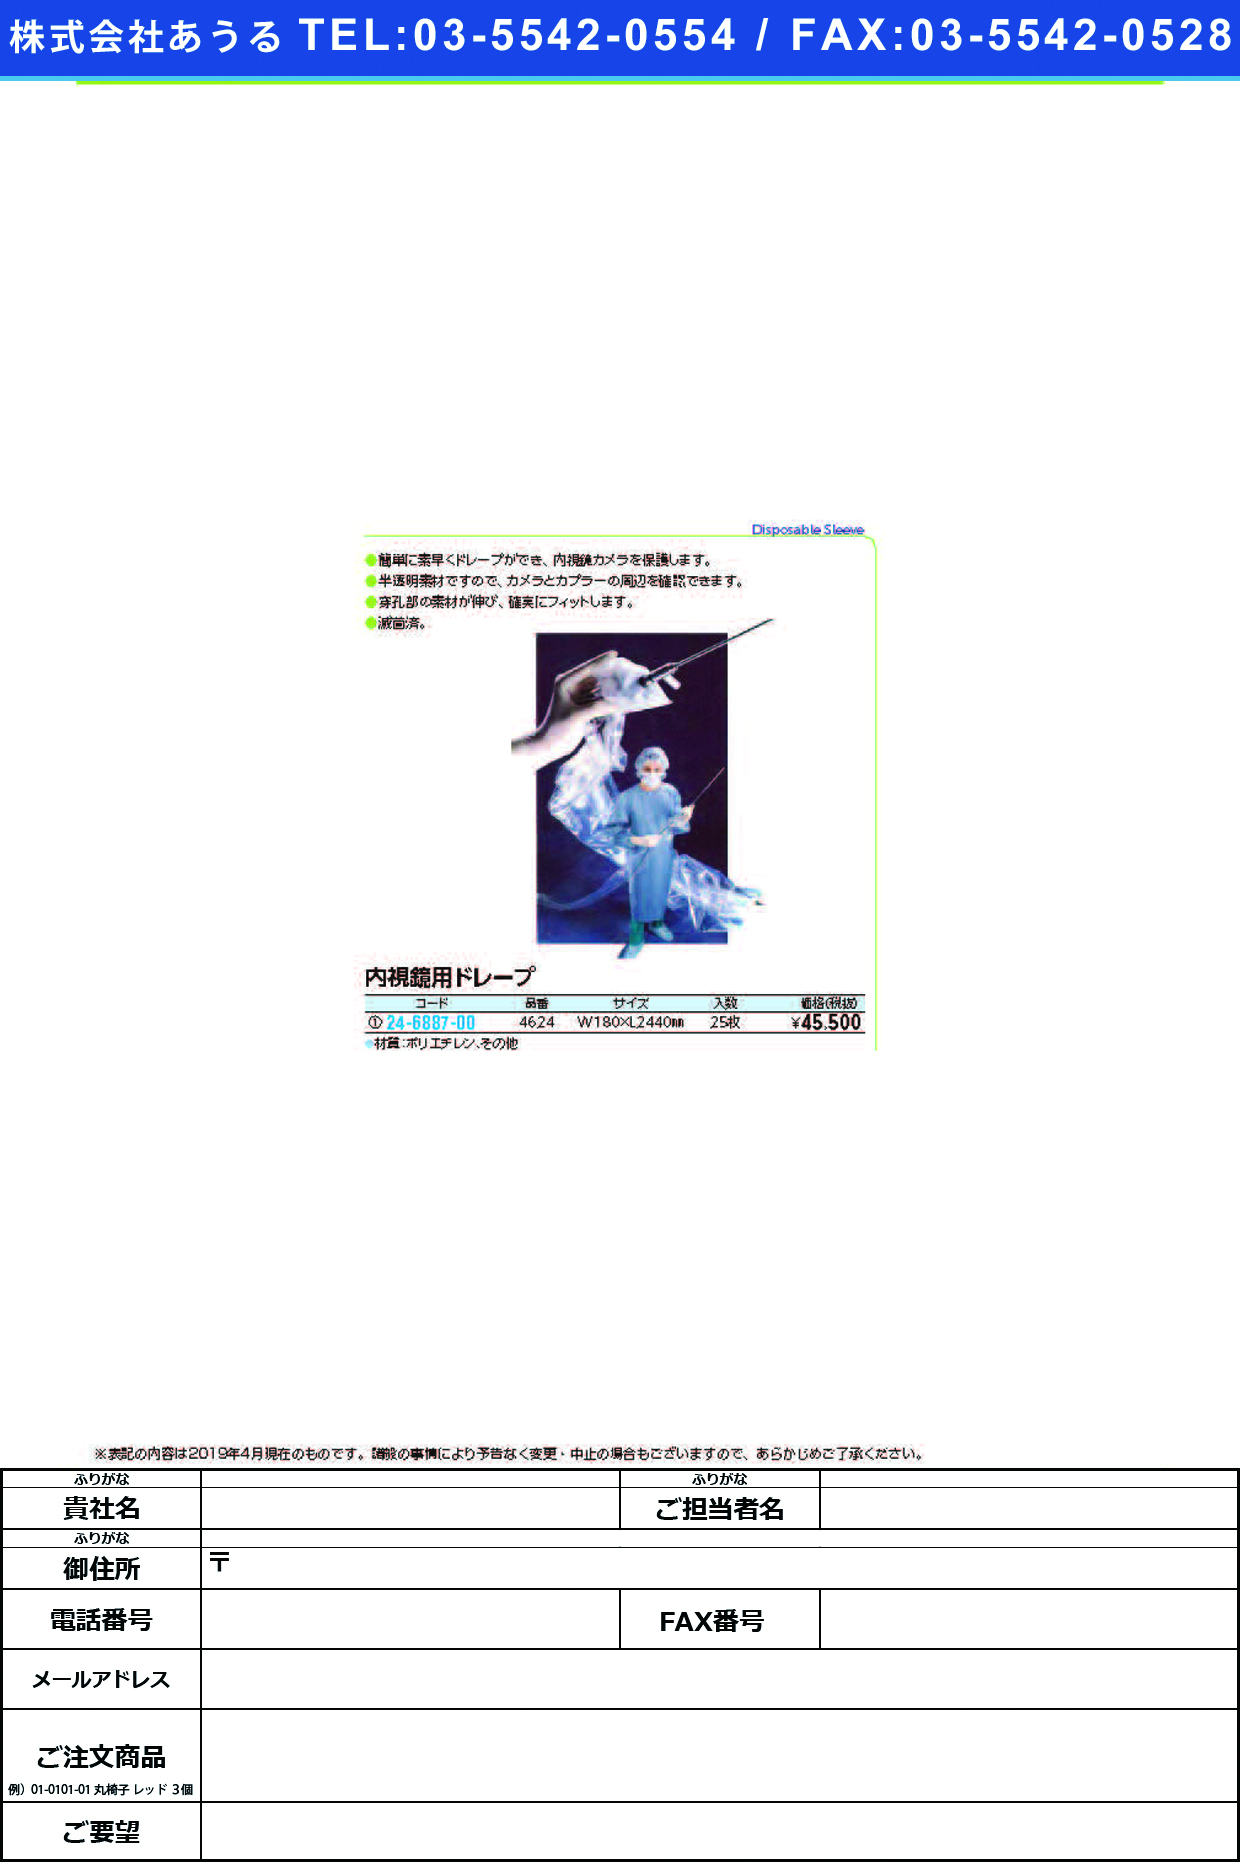 (24-6887-00)内視鏡用ドレープ P/N4624(25ﾏｲ) ﾅｲｼｷｮｳﾖｳﾄﾞﾚｰﾌﾟ【1箱単位】【2019年カタログ商品】